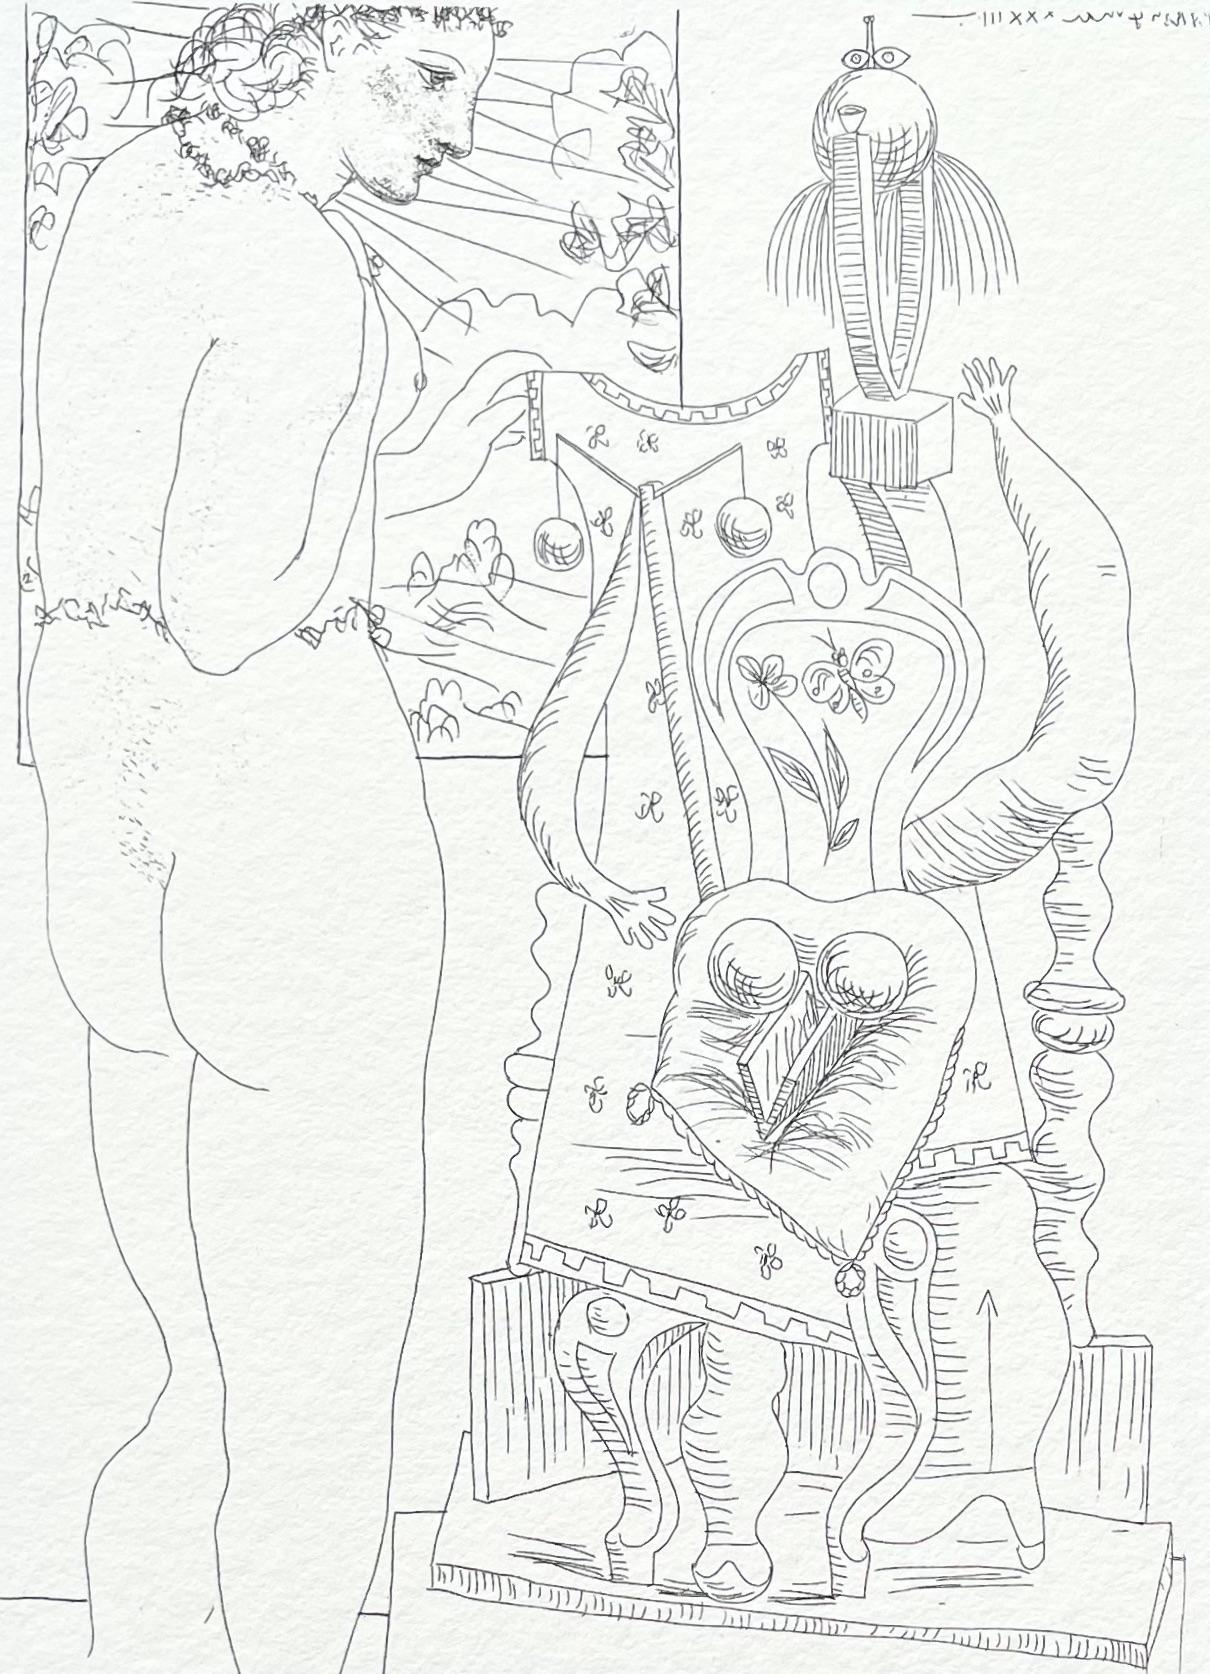 Picasso, Marie-Thérèse considérant son Effigie surréaliste sculptée (nach)